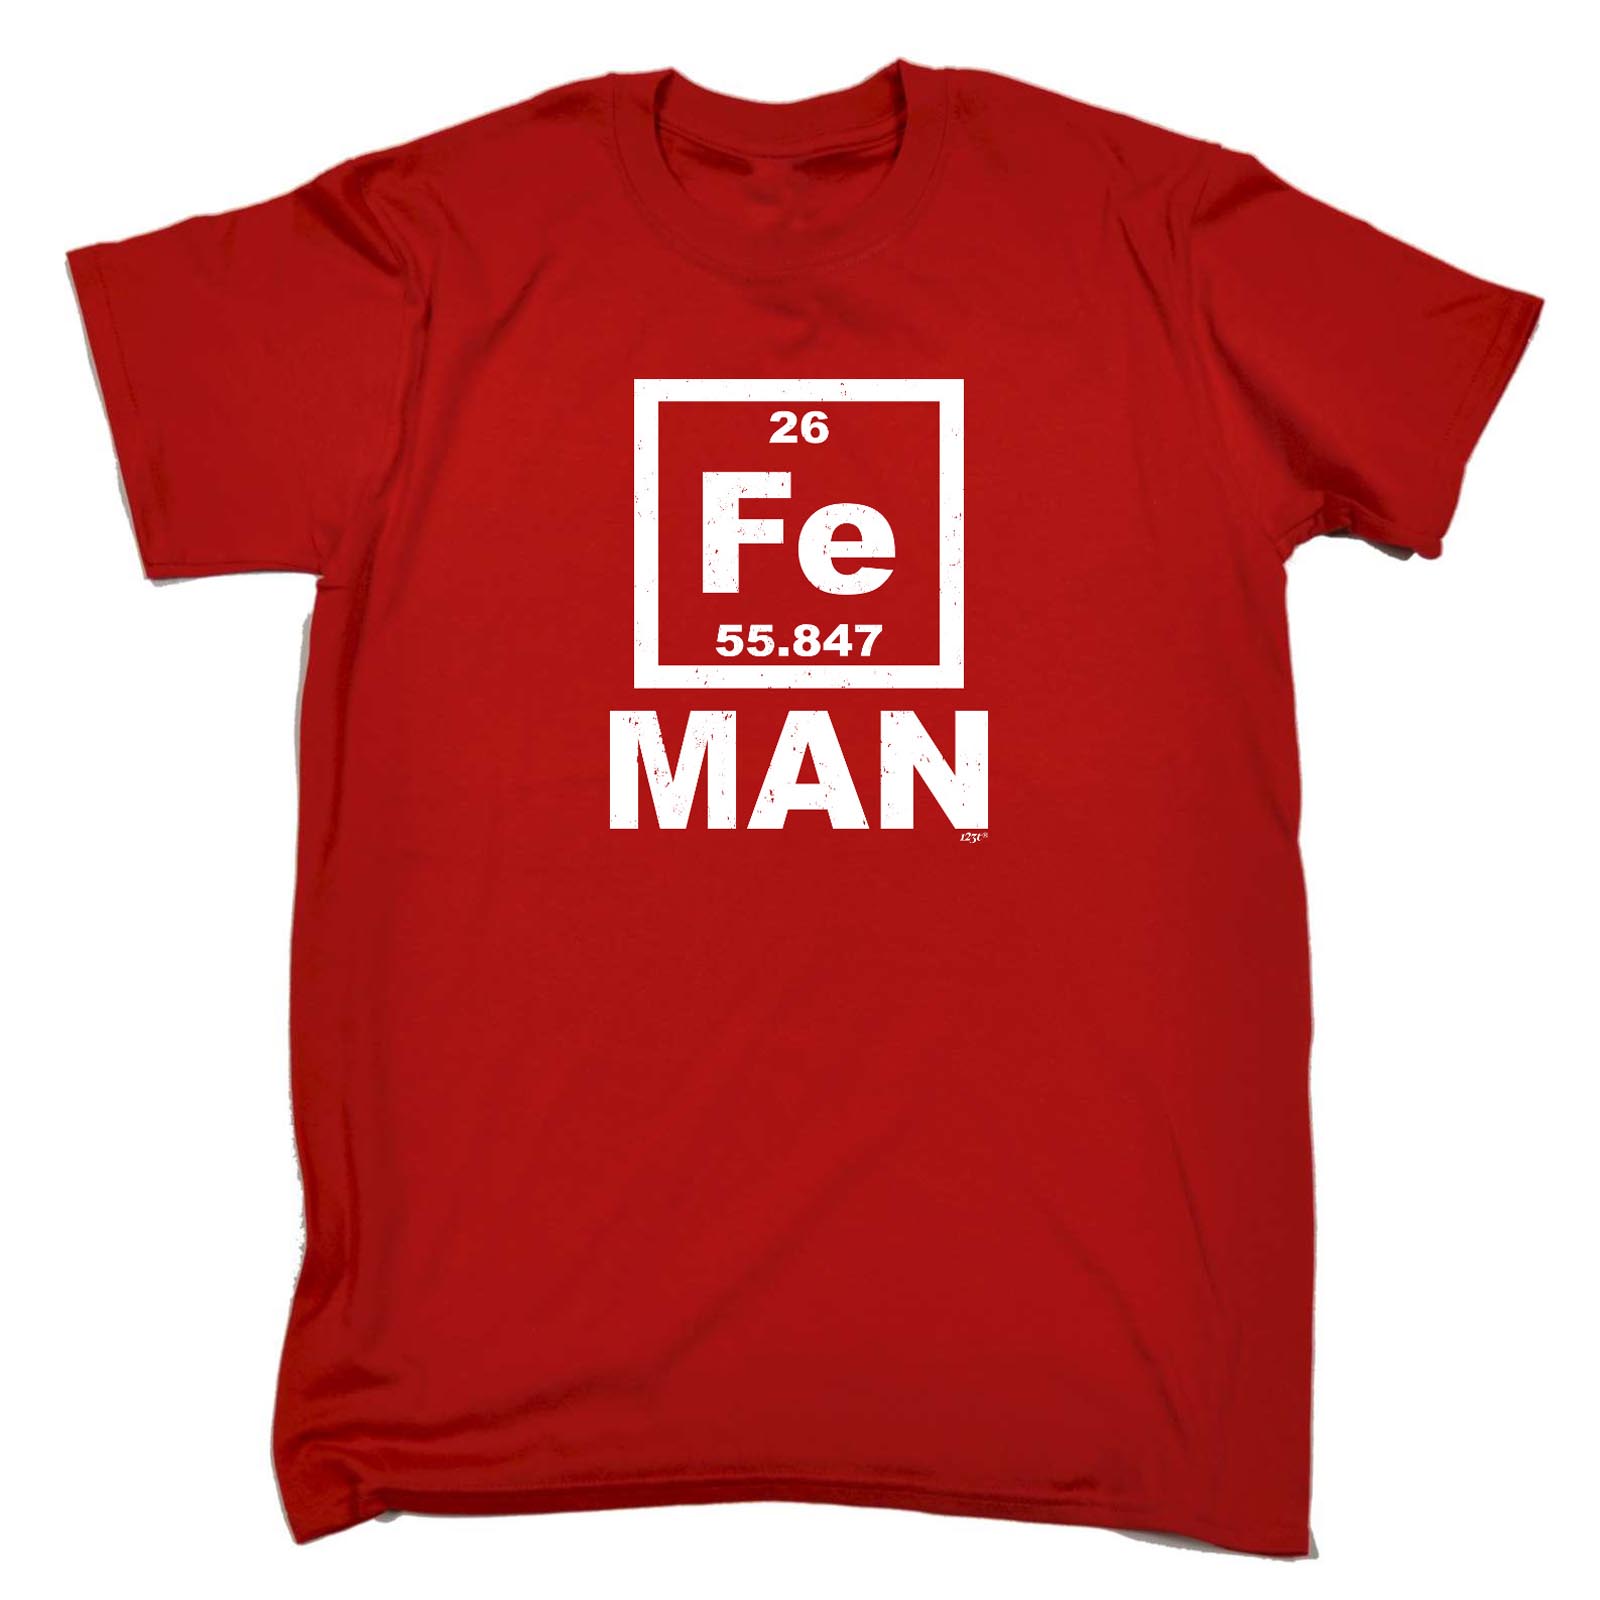 Drôle Nouveauté T-shirt homme tee tshirt-FE Iron Man périodique